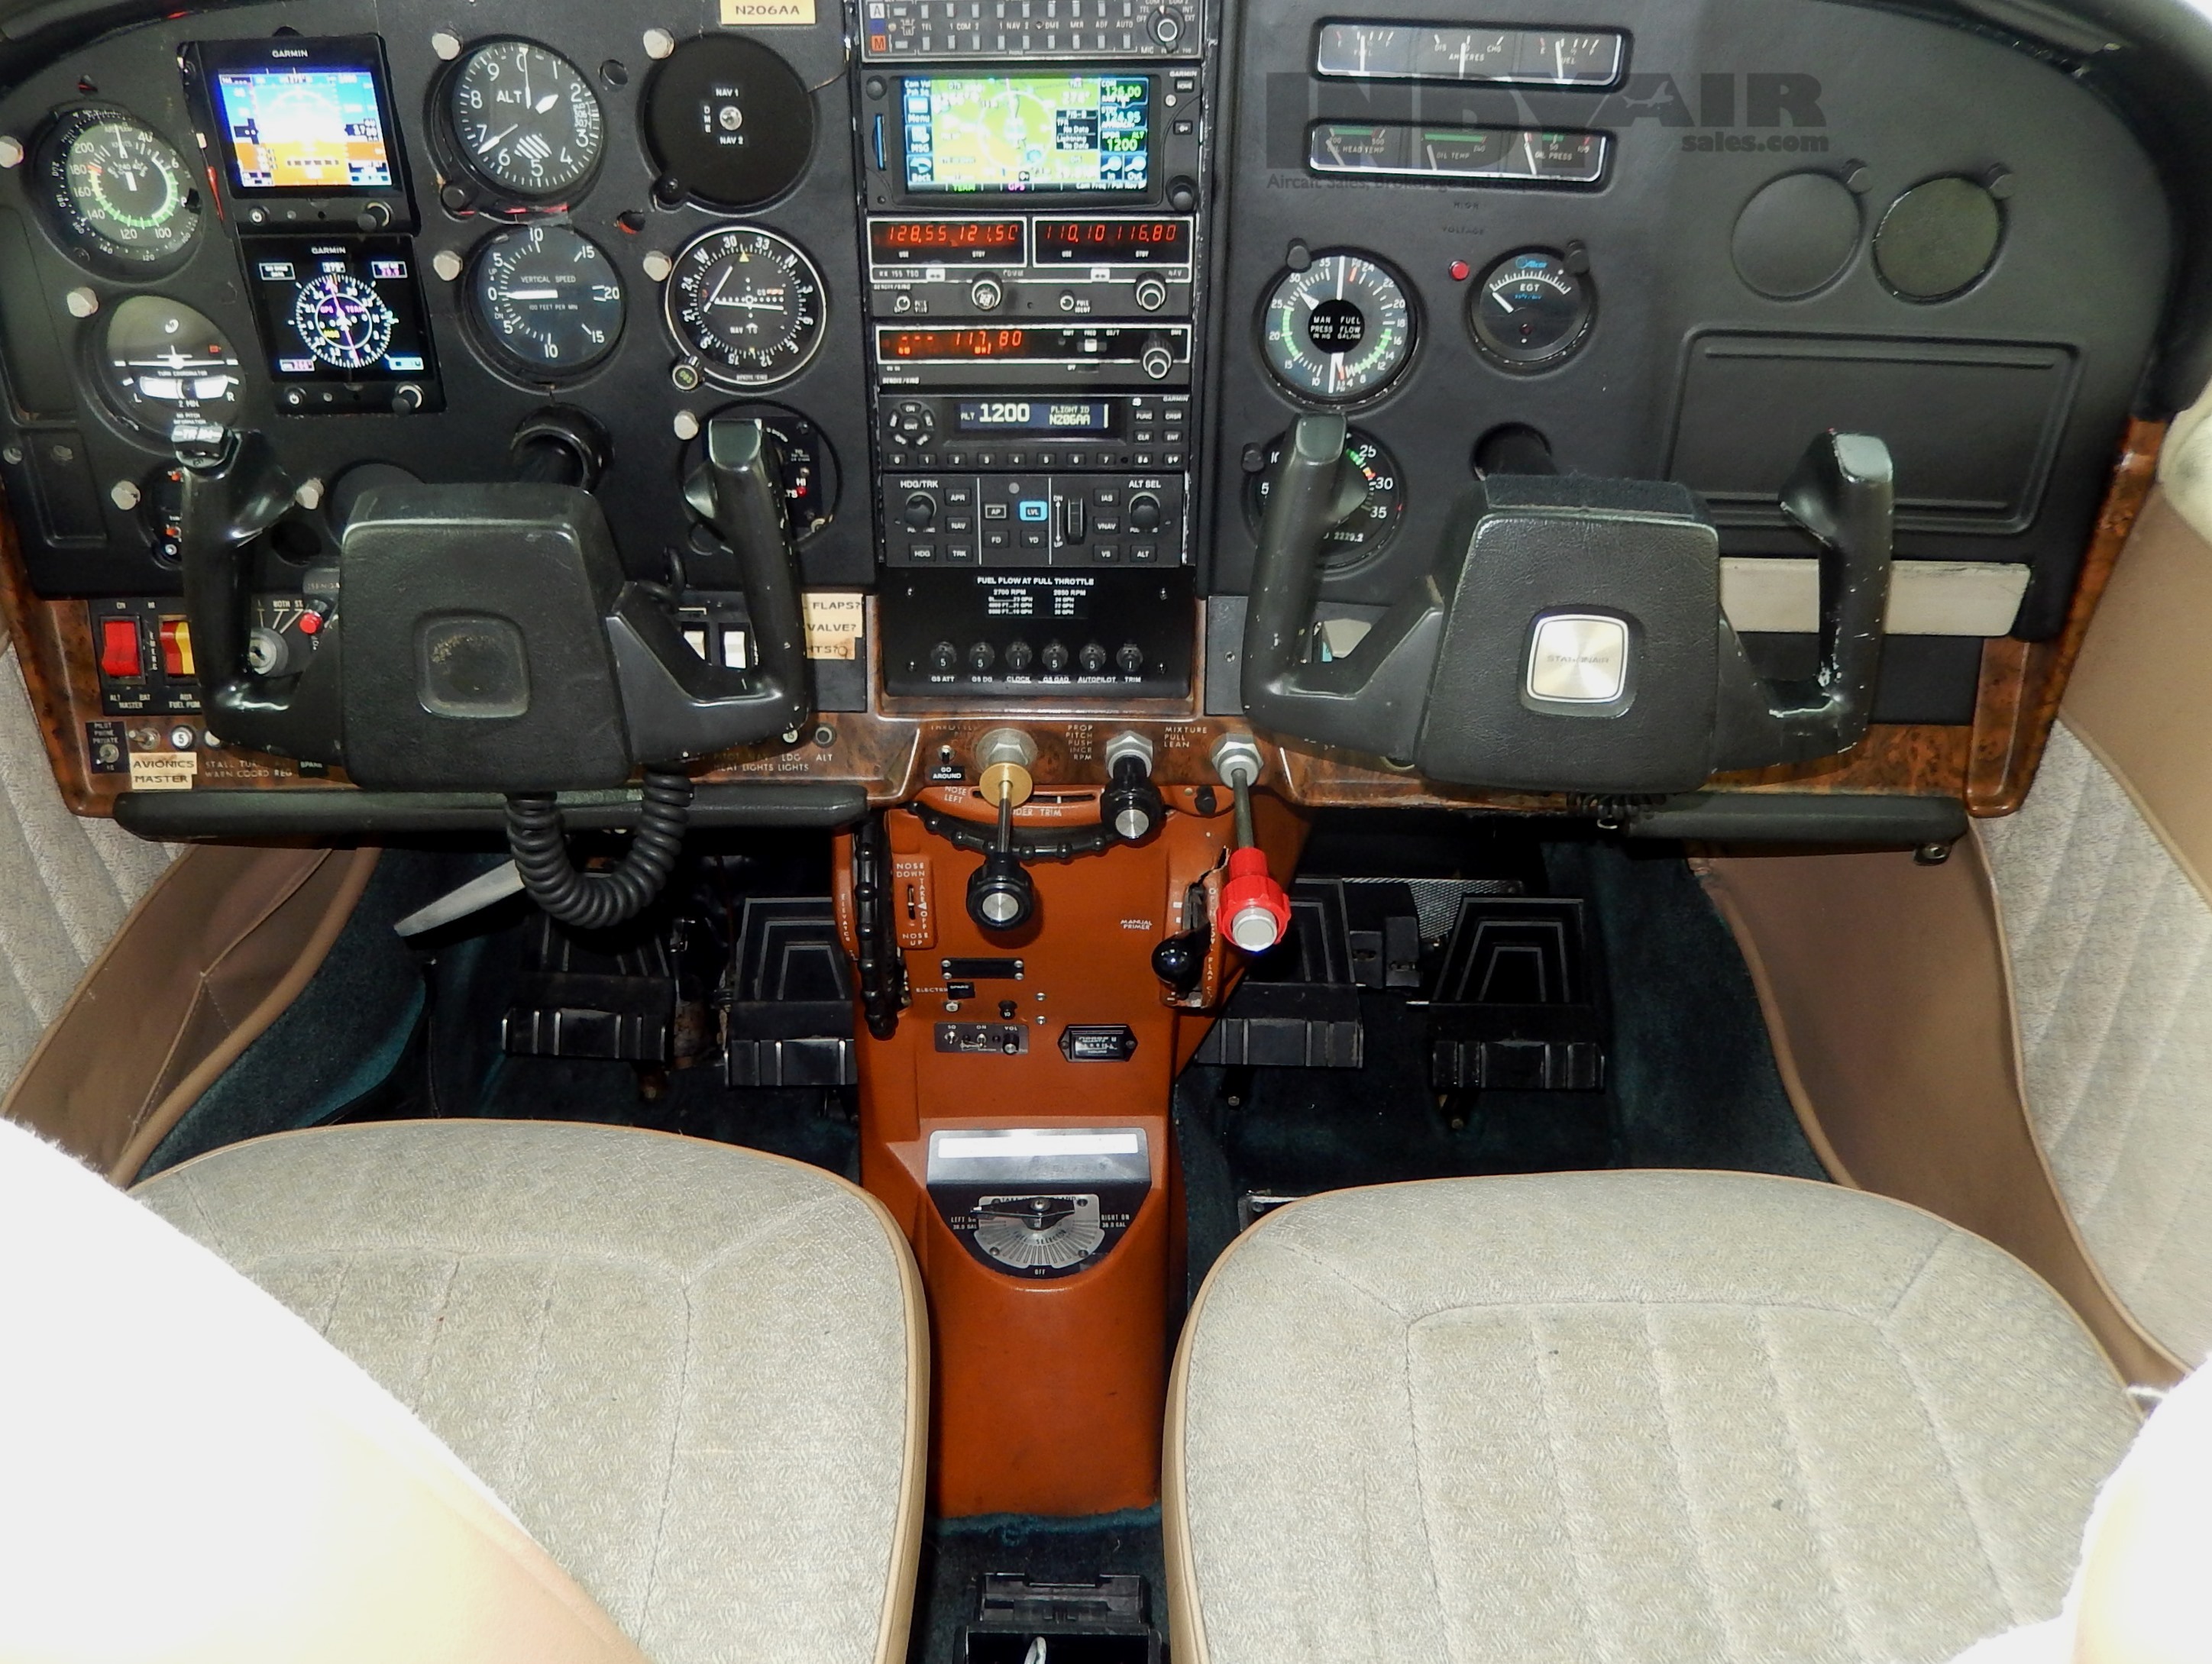 Cessna U206F - N206AA